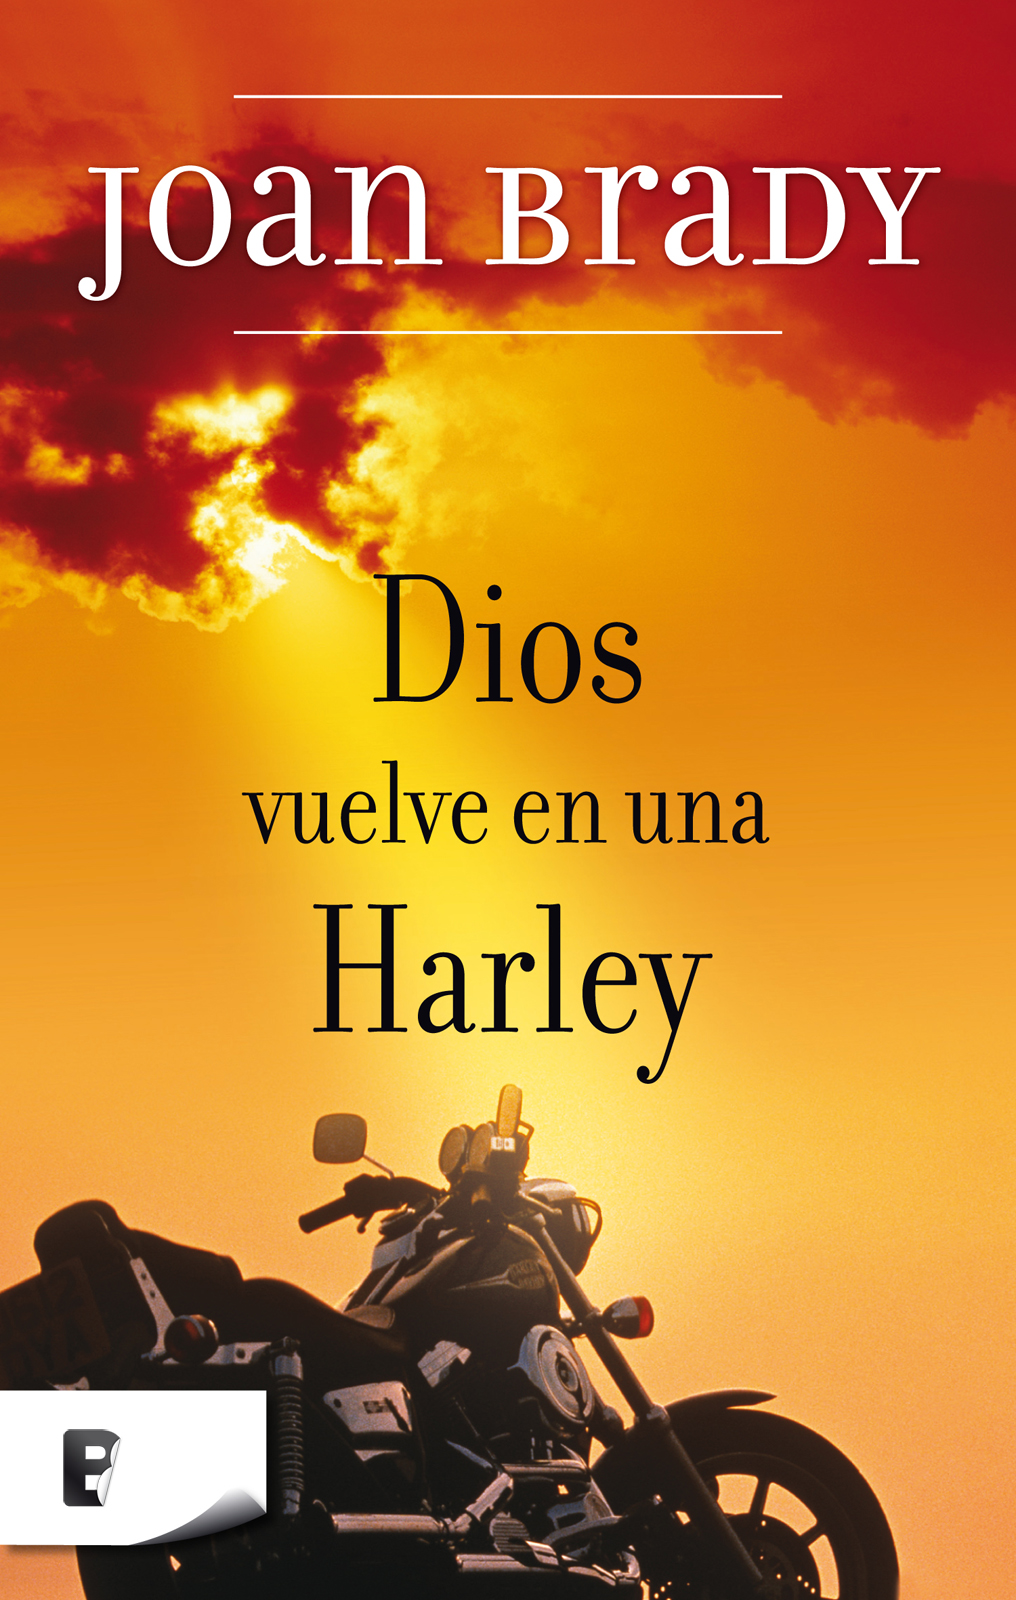 Libro de audio Dios vuelve en una Harley – Joan Brady